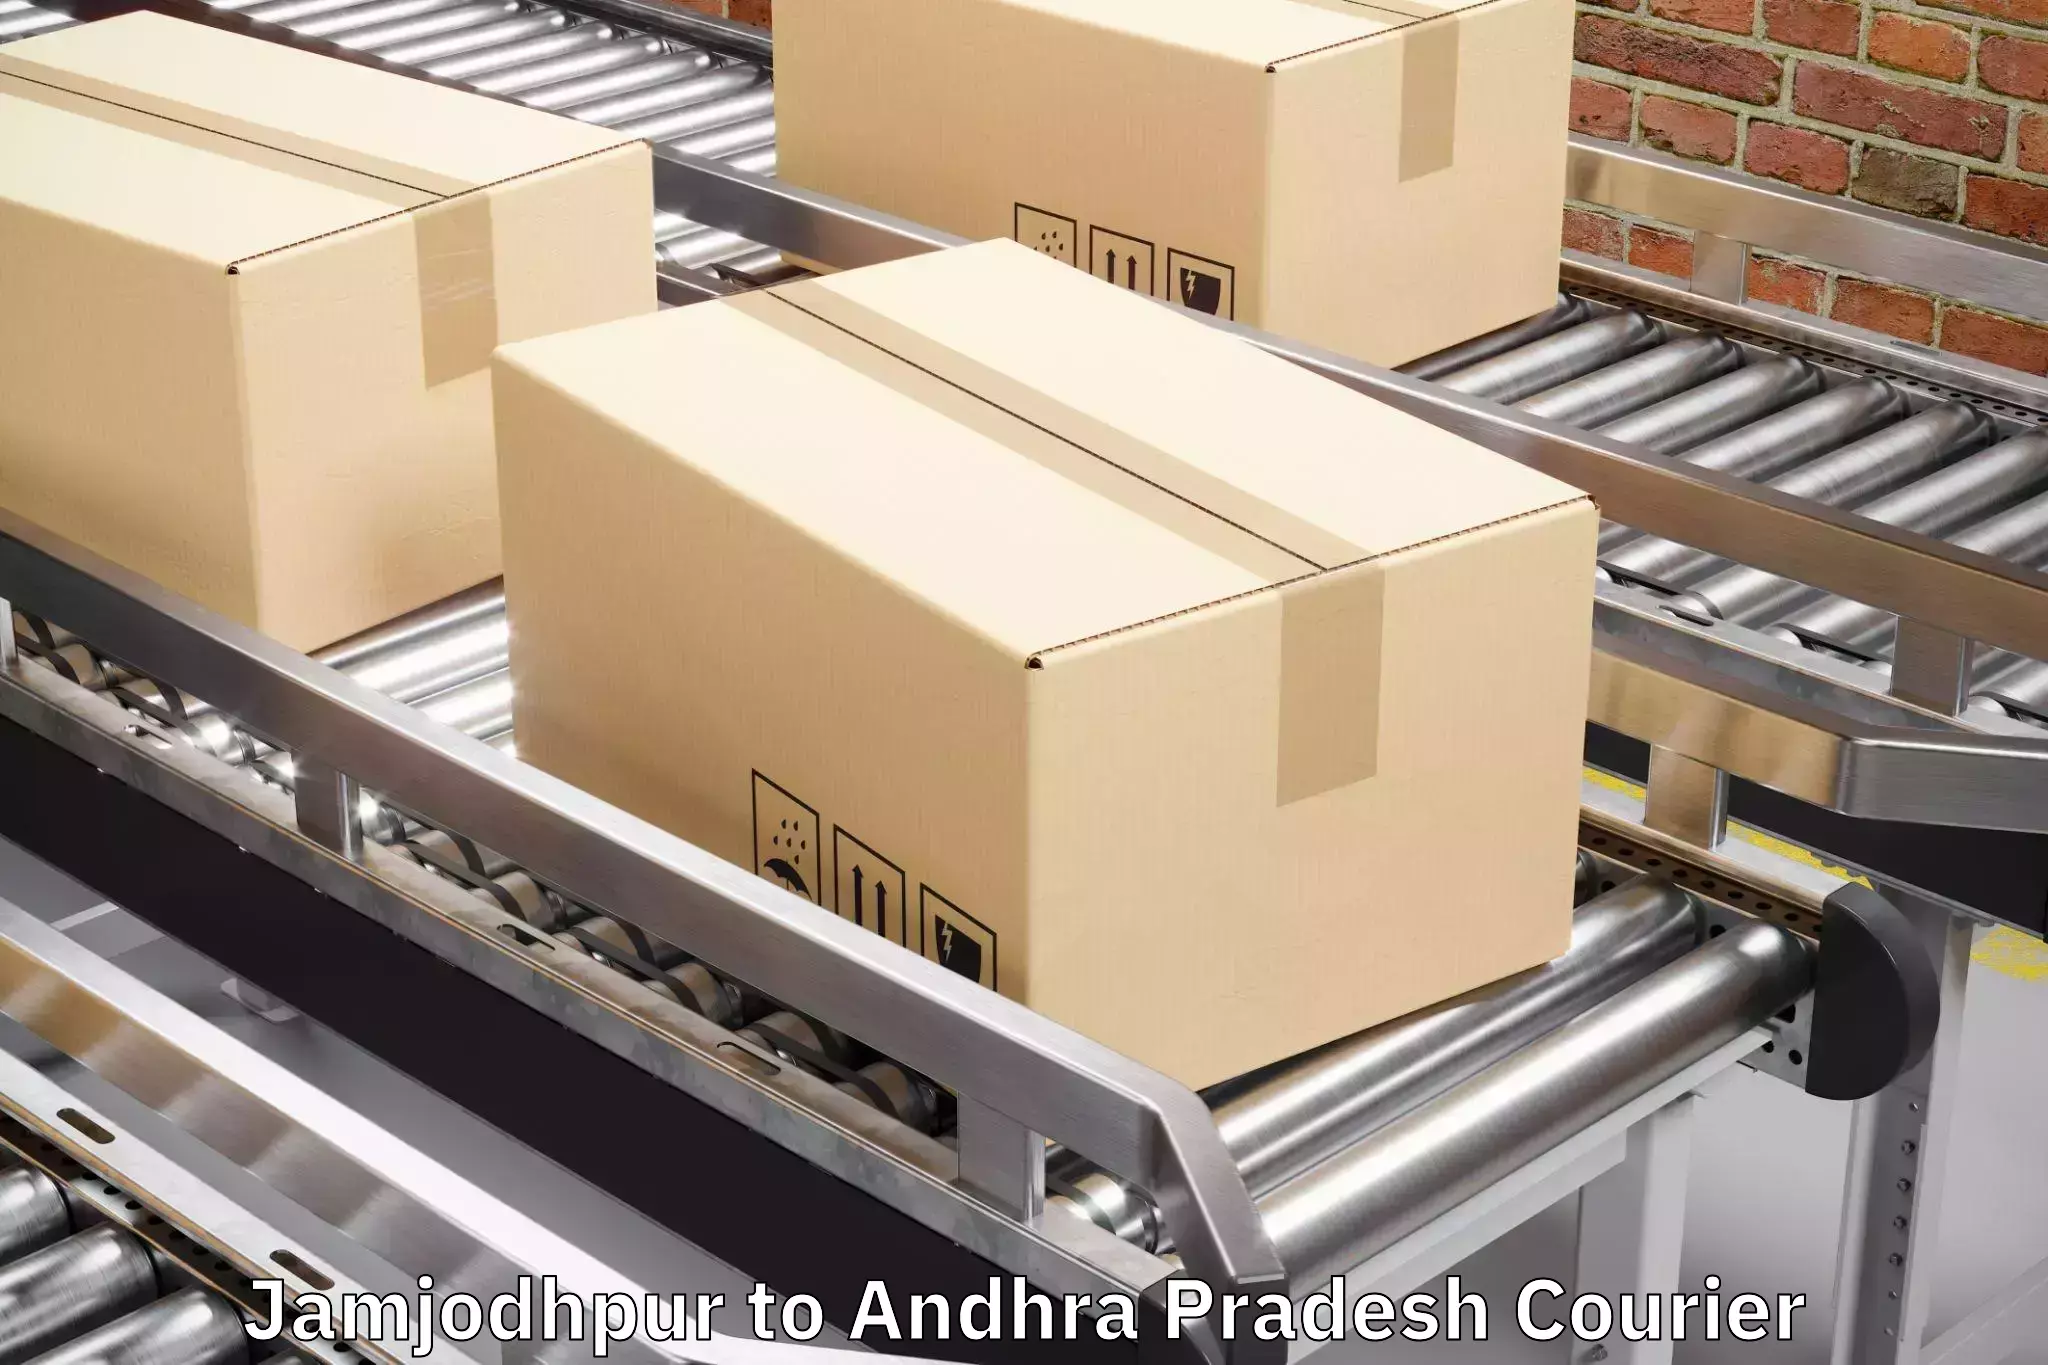 Suburban luggage delivery Jamjodhpur to Andhra Pradesh